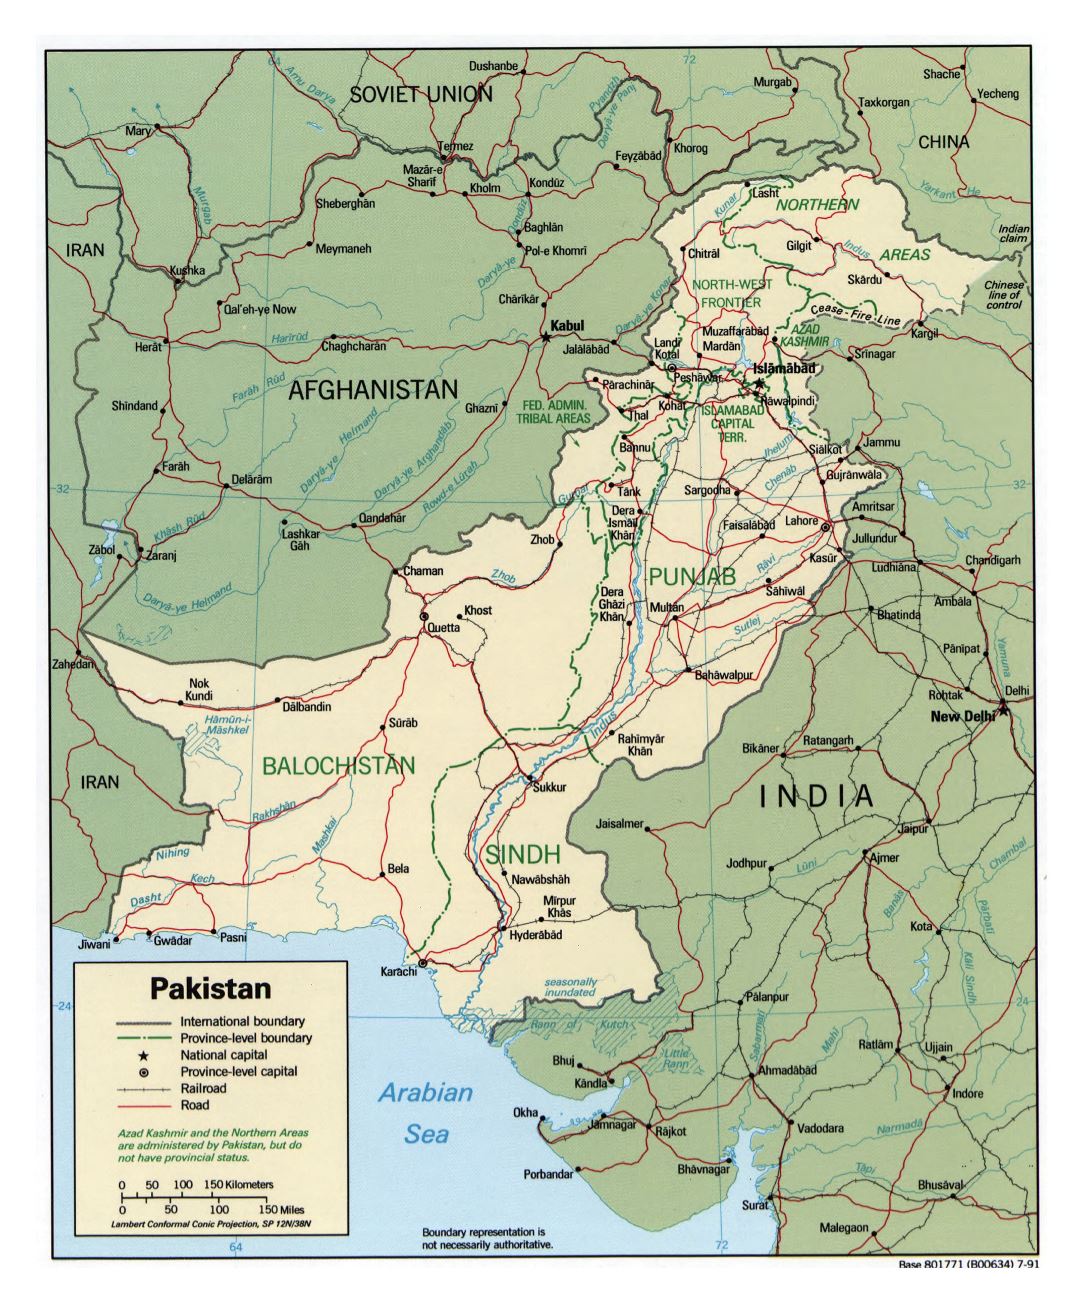 Grande detallado mapa político y administrativo de Pakistán con carreteras, ferrocarriles y principales ciudades - 1991